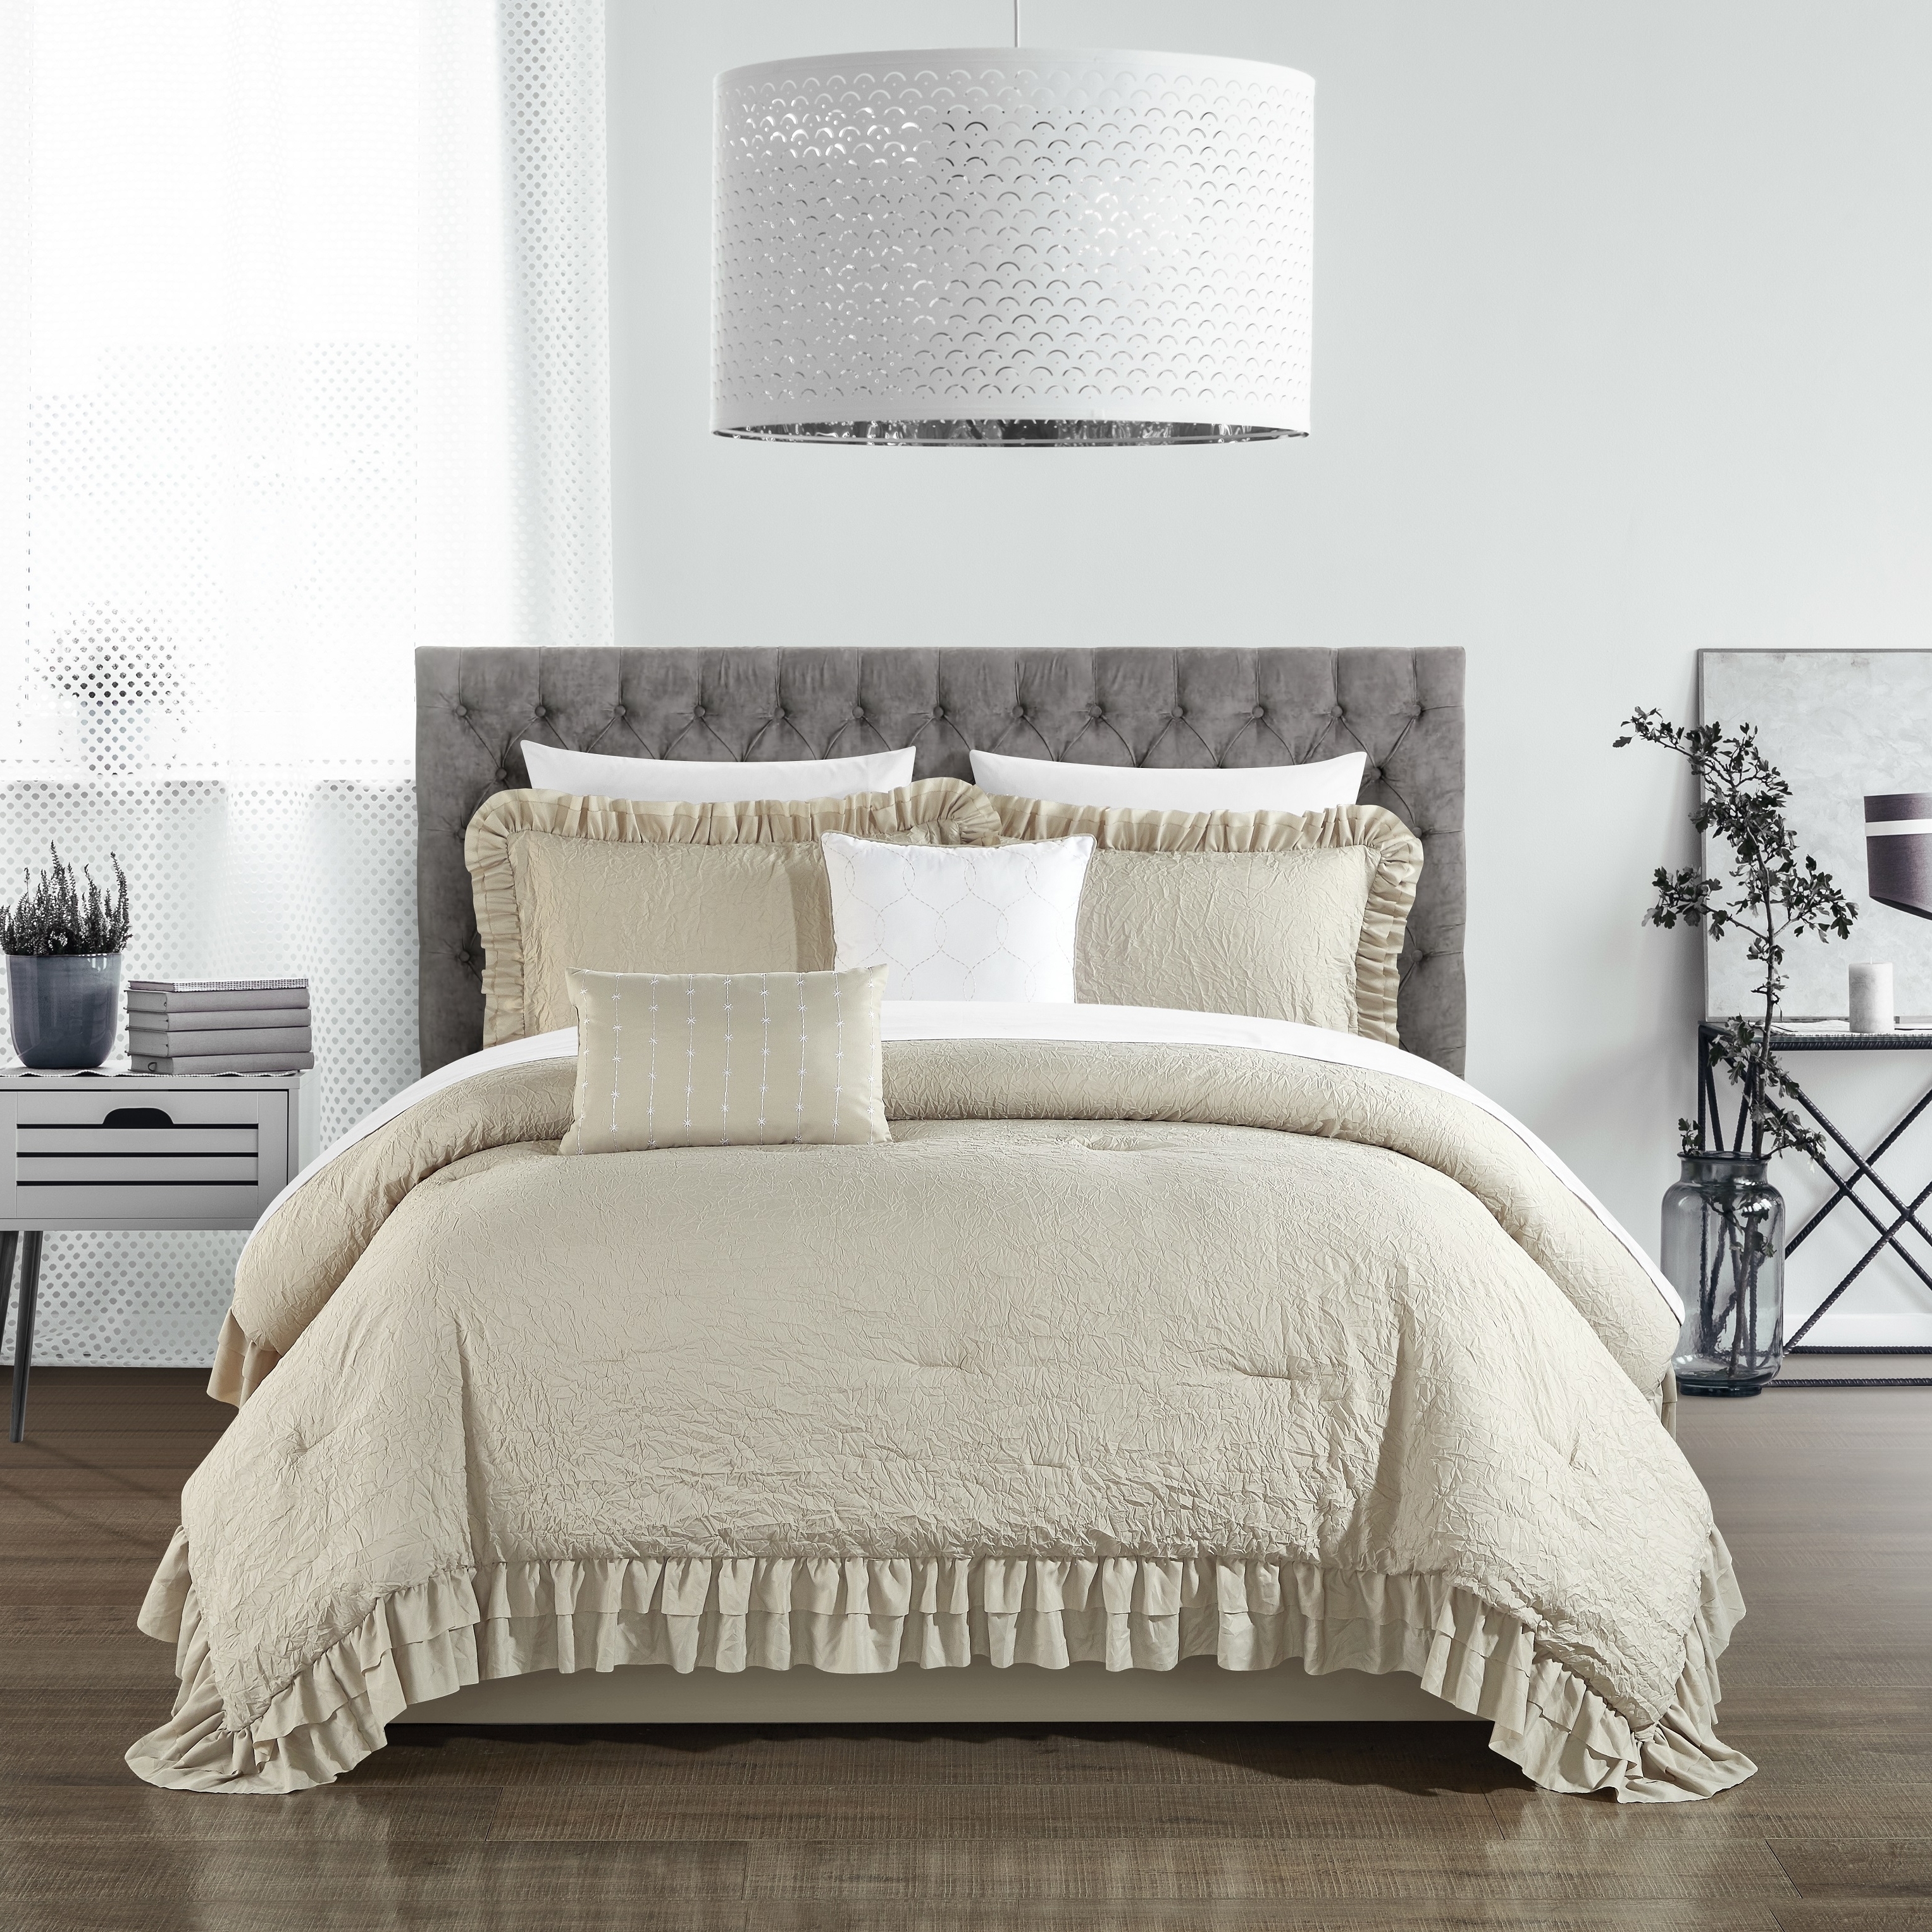 5 Piece Kensley Comforter Set Washed Crinkle Ruffled Flange Border Design Bedding - Grey, Queen